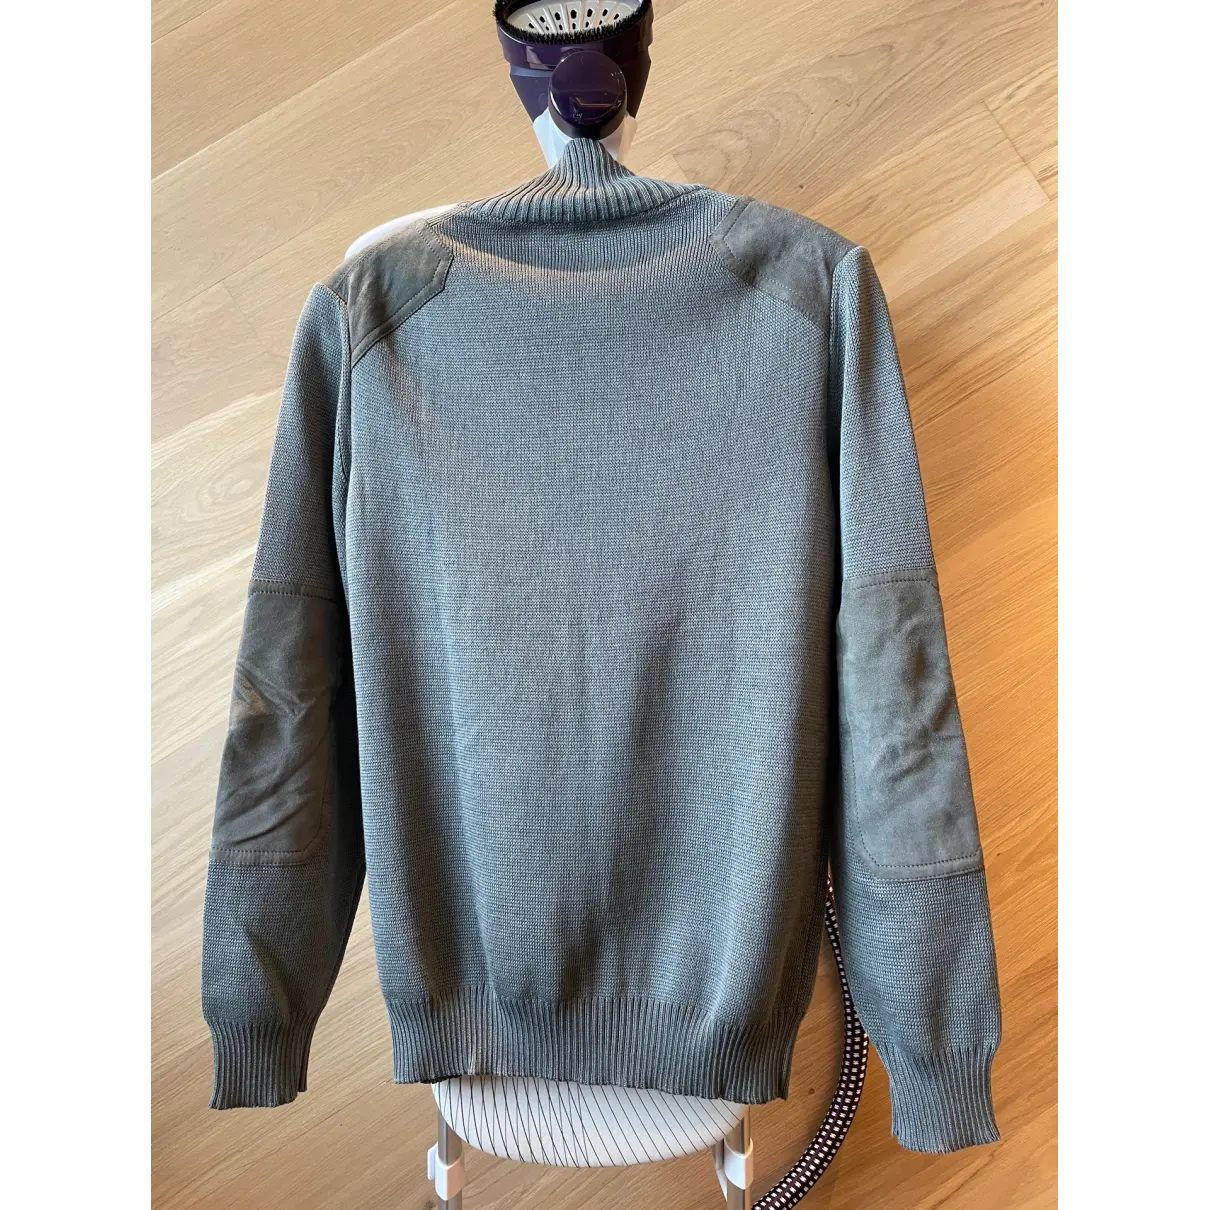 Buy Louis Vuitton Knitwear & sweatshirt online